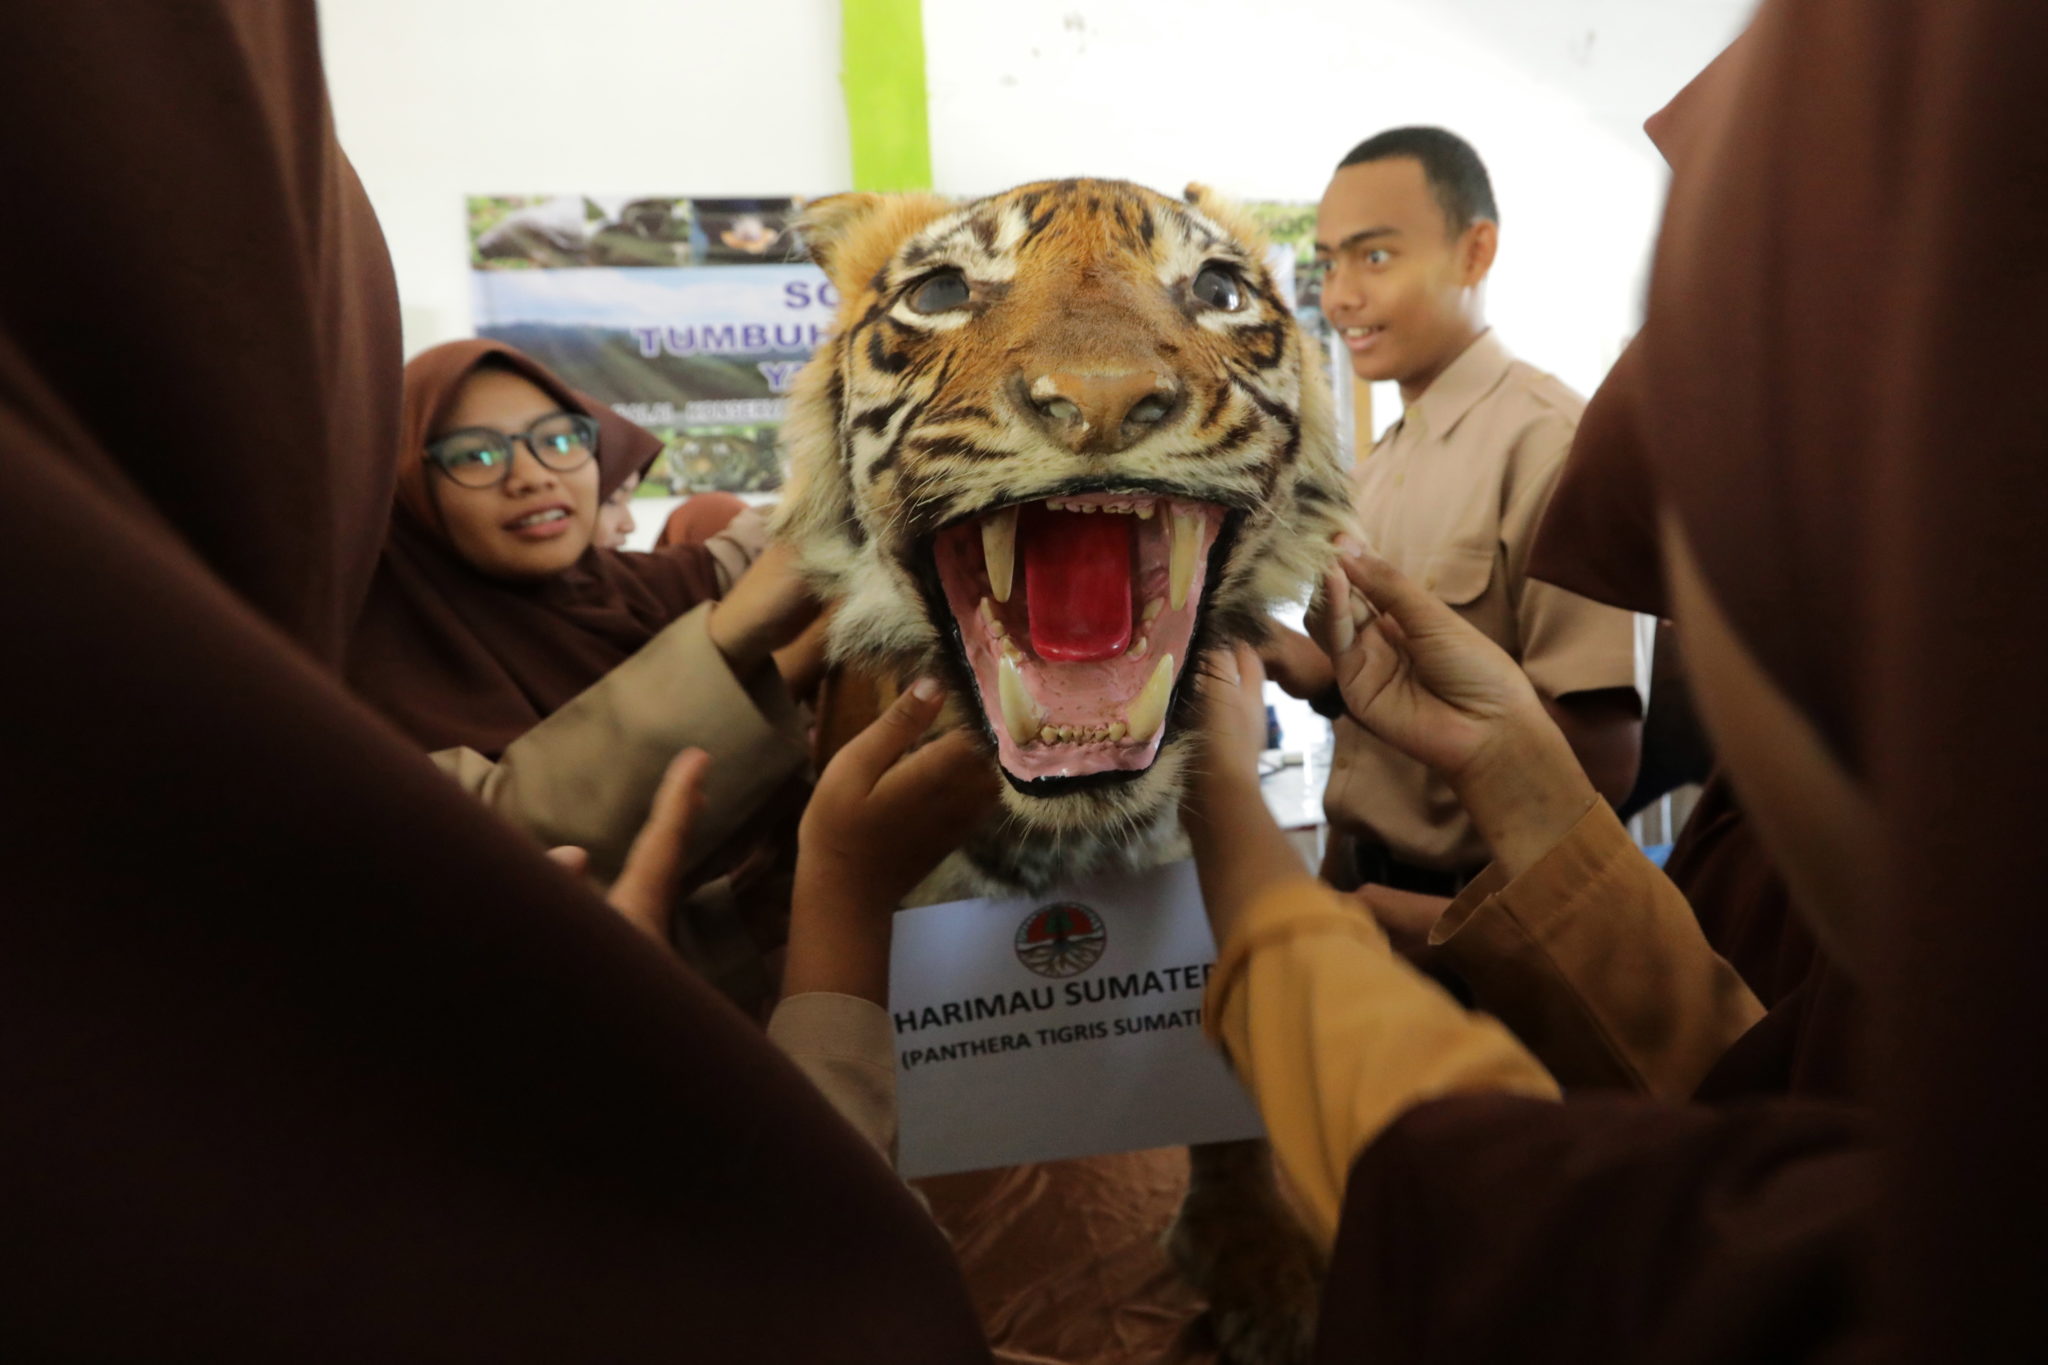 INDONEZJA: Uczniowie uczą się o ochronie środowiska i faunie swojego kraju, korzystając z takich pomocy jak model tygrysa. sumatryjskiego. fot. EPA/HOTLI SIMANJUNTAK 
